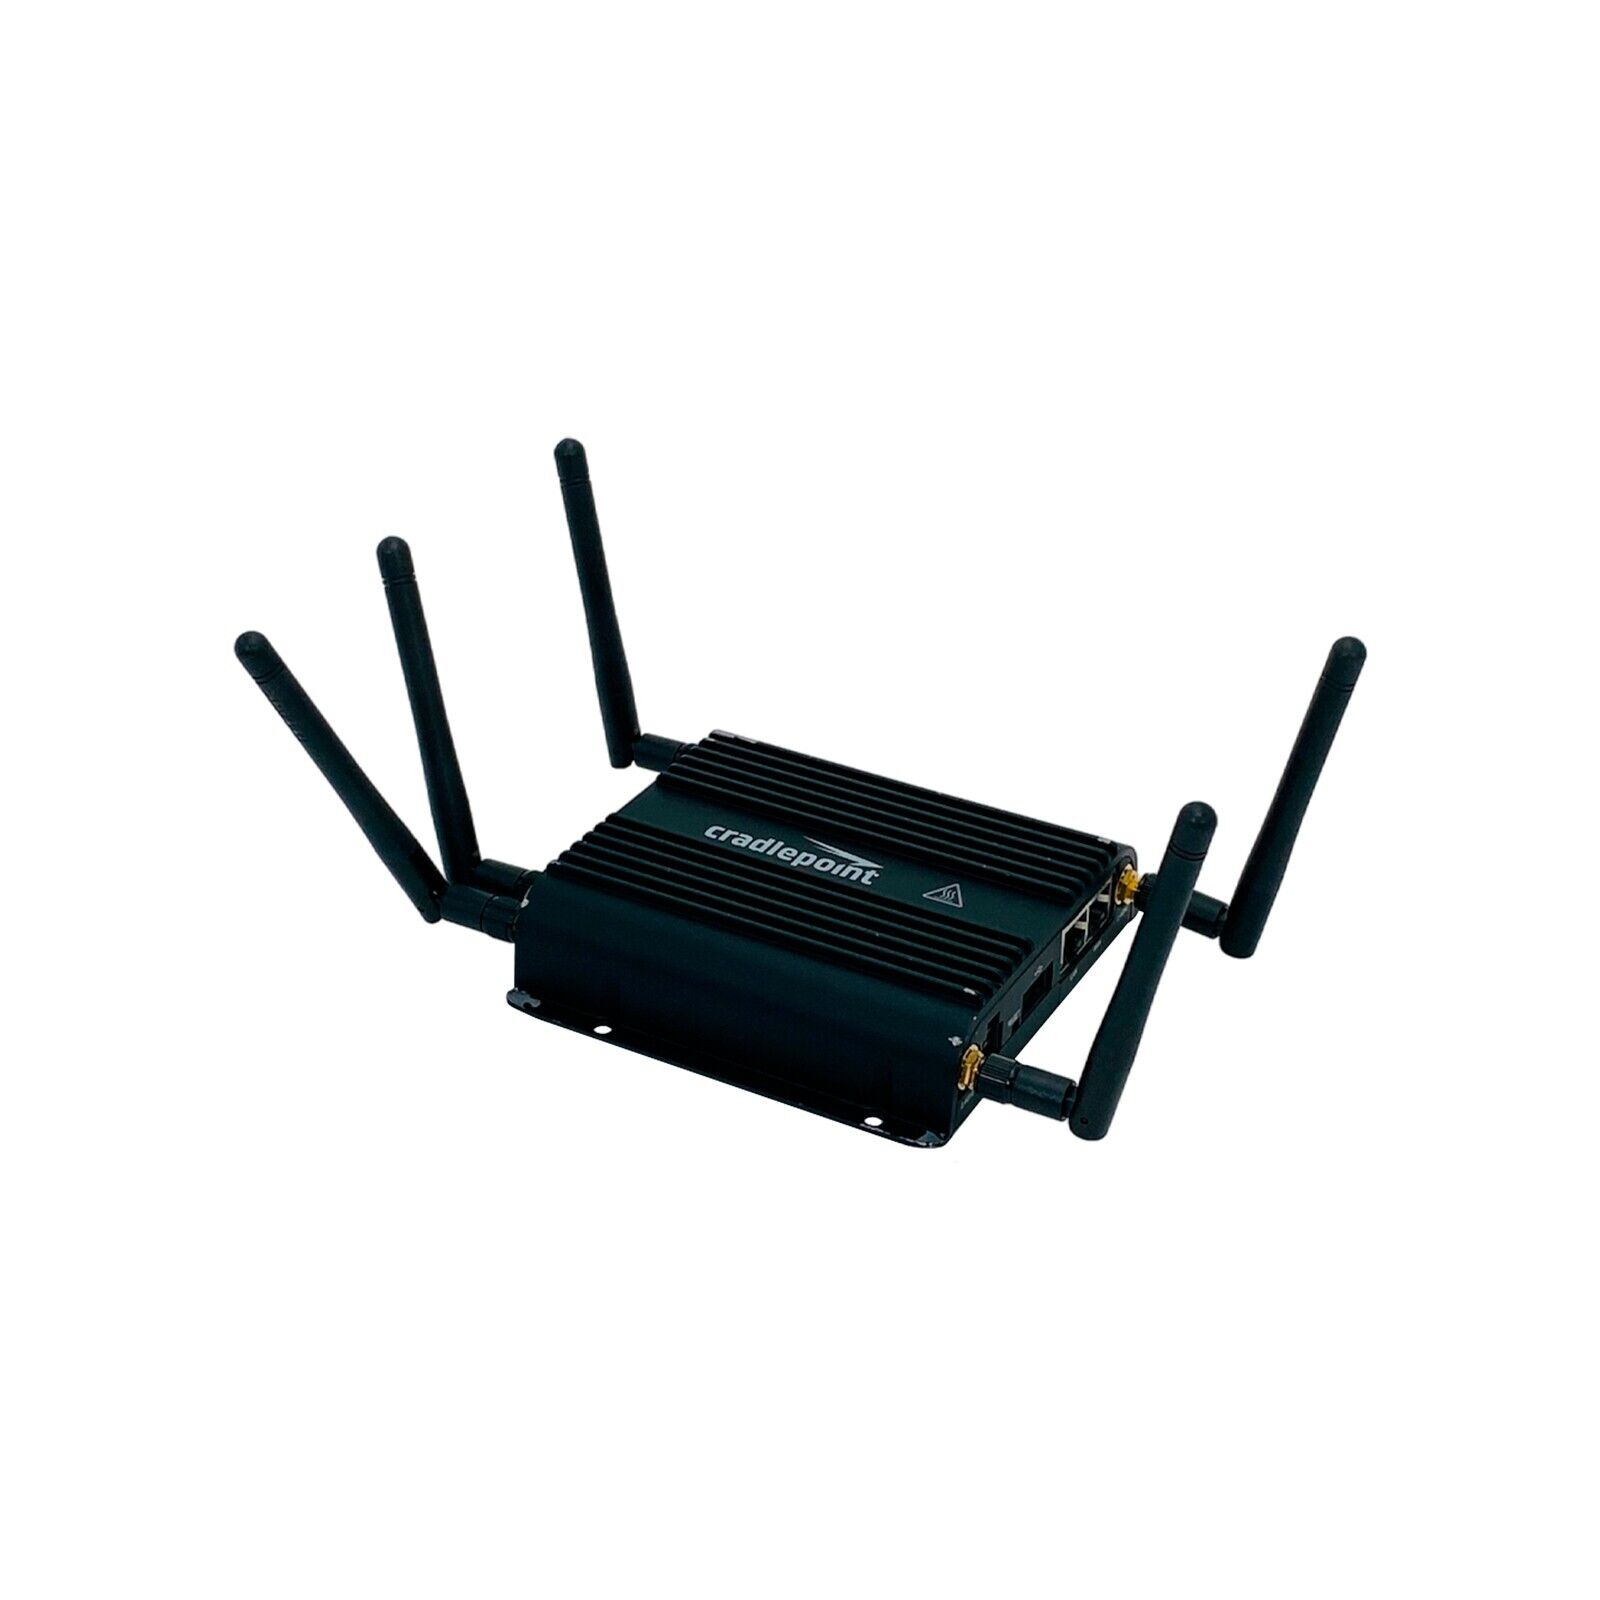 Cradlepoint IBR600C-150M-D LTE Dual SIM Verizone, AT&T Compatible Router No P/S